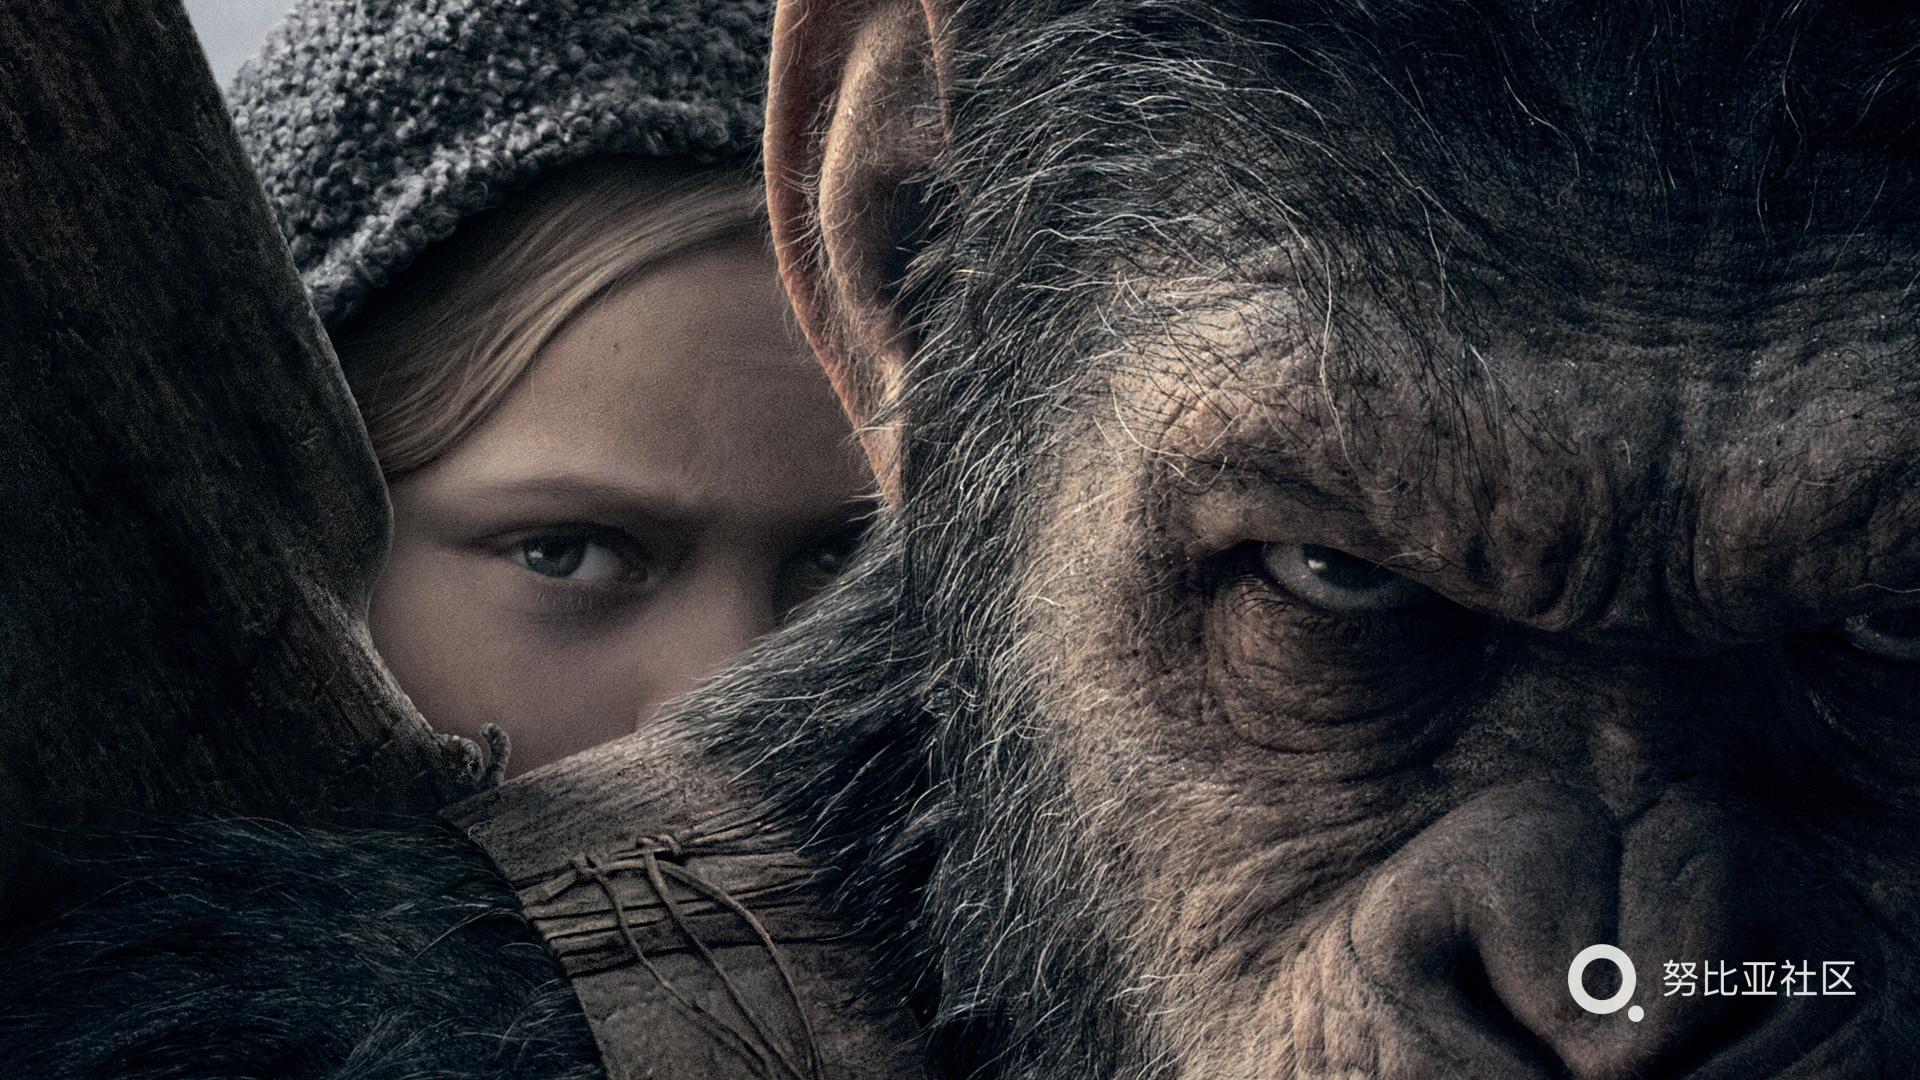 《猩球崛起3》今日上映 人类与猿族“决一死战”